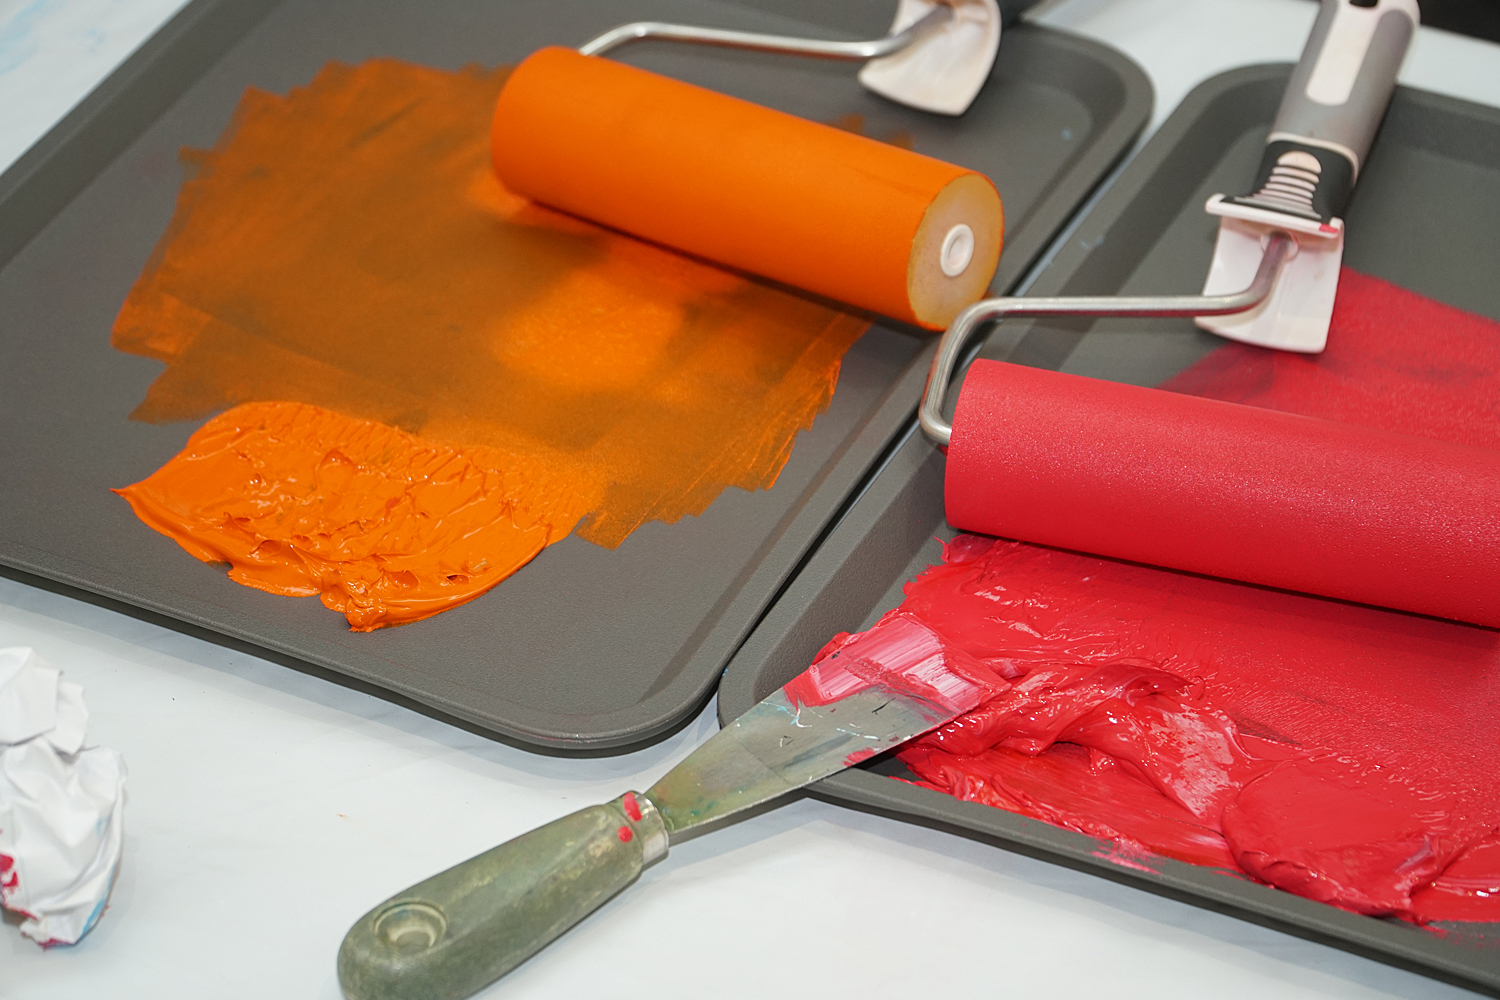 Detailansicht | wasserbasierende Linoldruckfarben warten auf ihren Einsatz | Foto: Markus Schepers-Diekmann